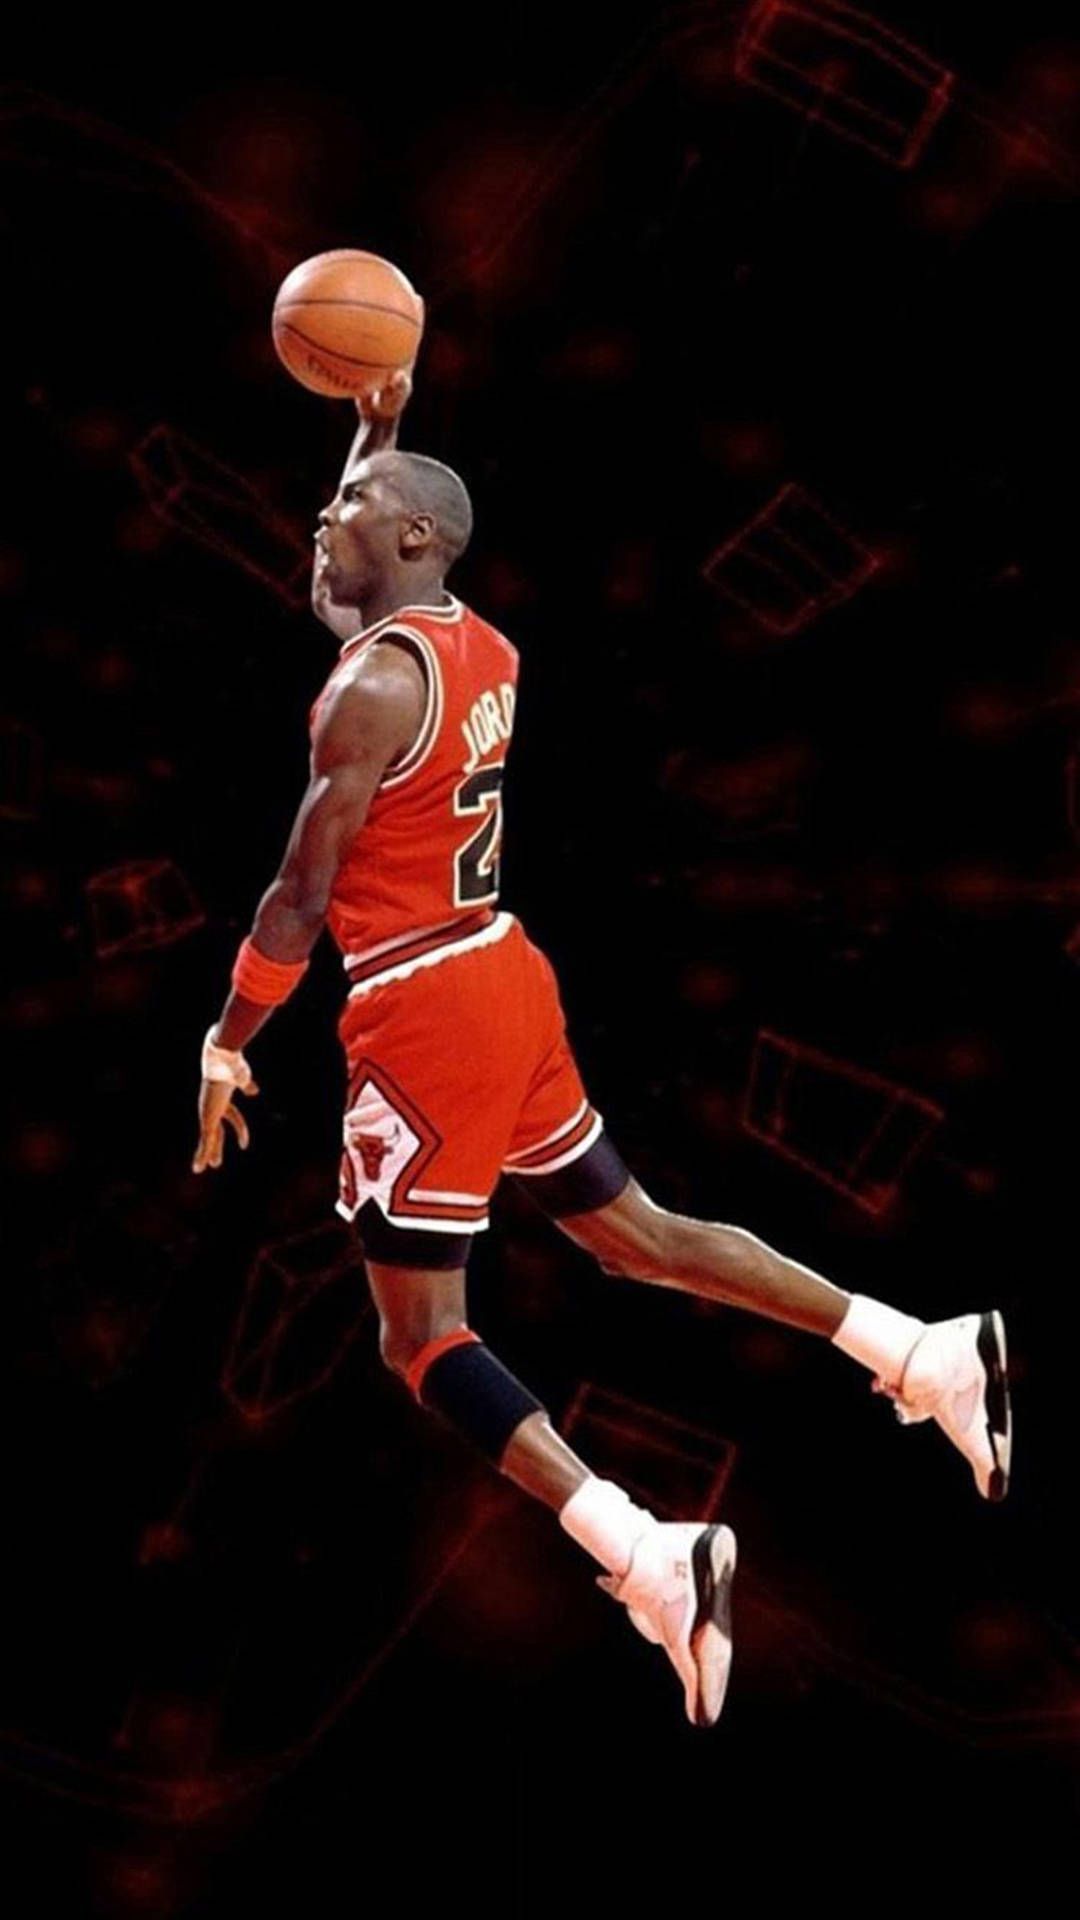 Download Basketball iPhone Michael Jordan Wallpaper